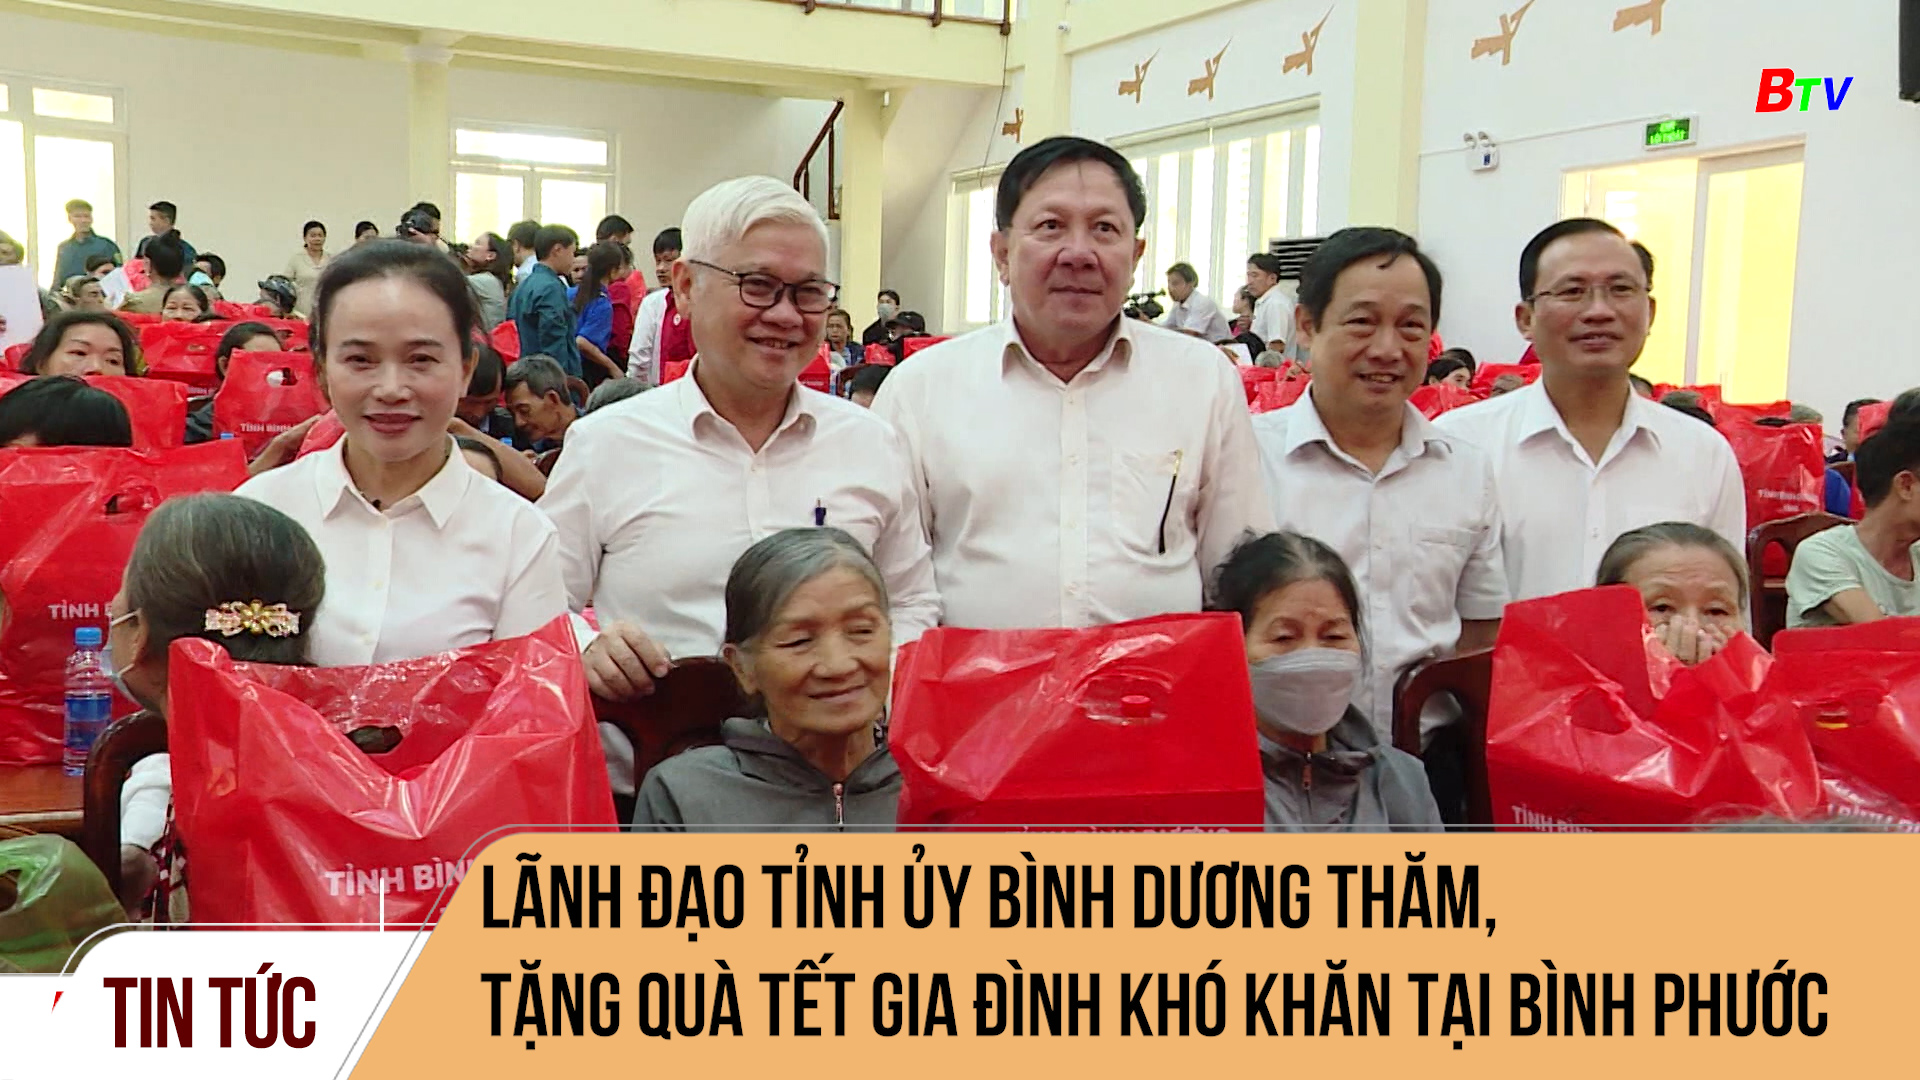 Lãnh đạo Tỉnh ủy Bình Dương thăm, tặng quà tết gia đình khó khăn tại Bình Phước	